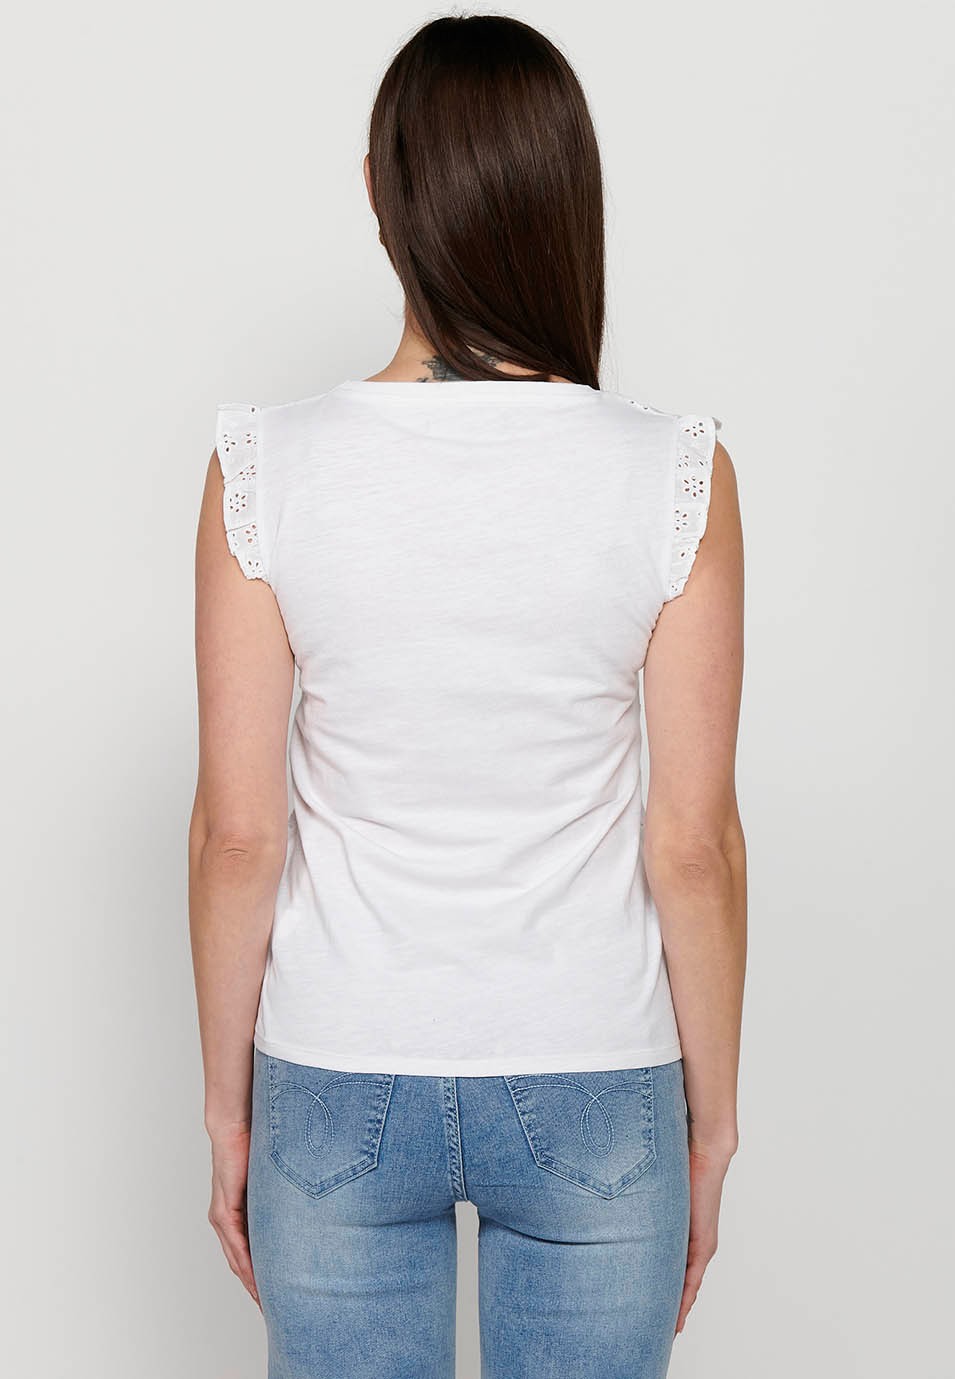 T-shirt manches courtes, volant sur les épaules, coloris blanc pour femme